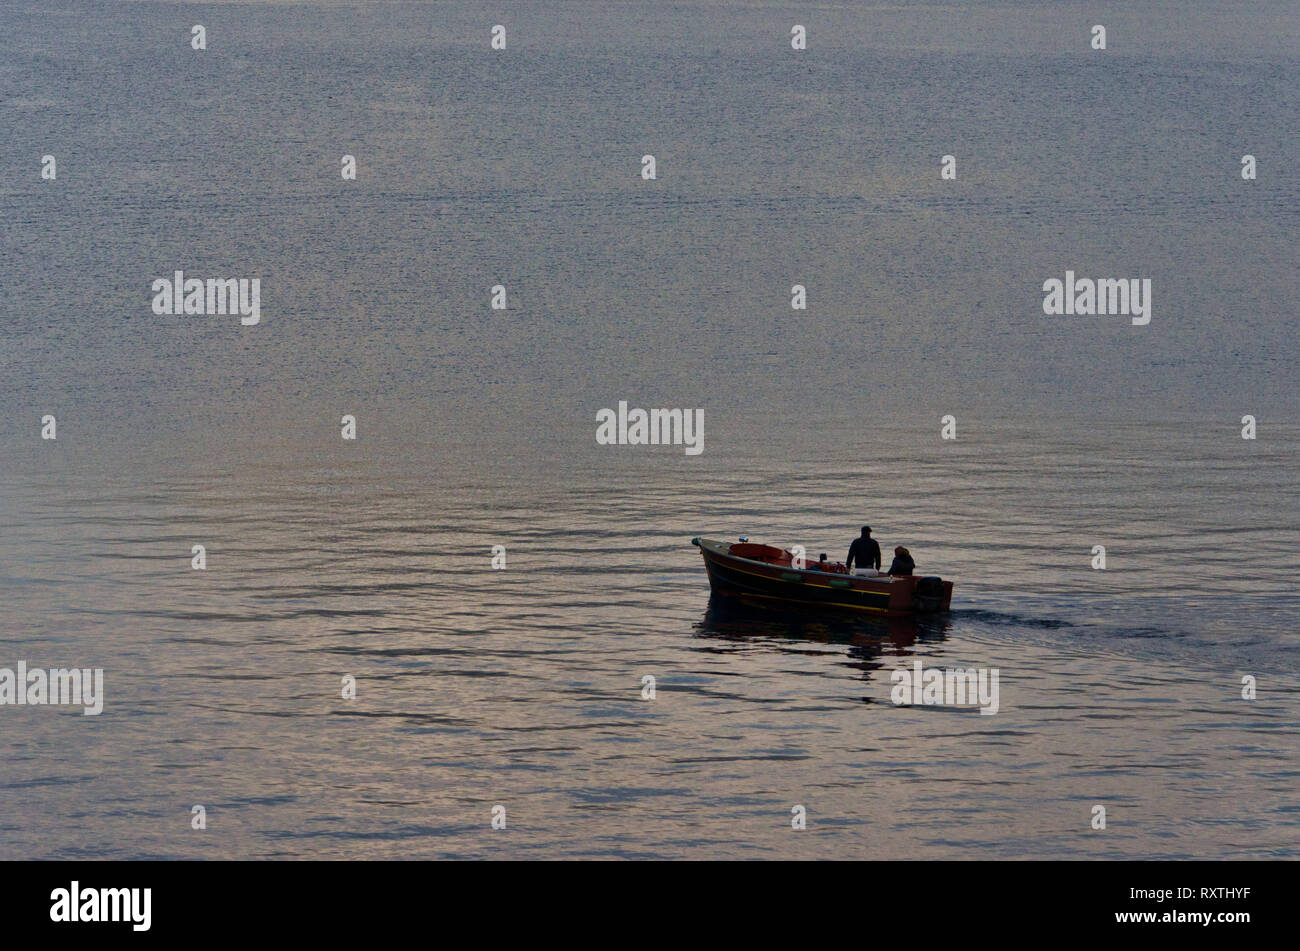 Pequeño barco con dos pescadores en el lago, la reflexión de la luz sobre el agua, el agua de superficie rugosa, tranquilo escenario del lago de Iseo en Italia Foto de stock